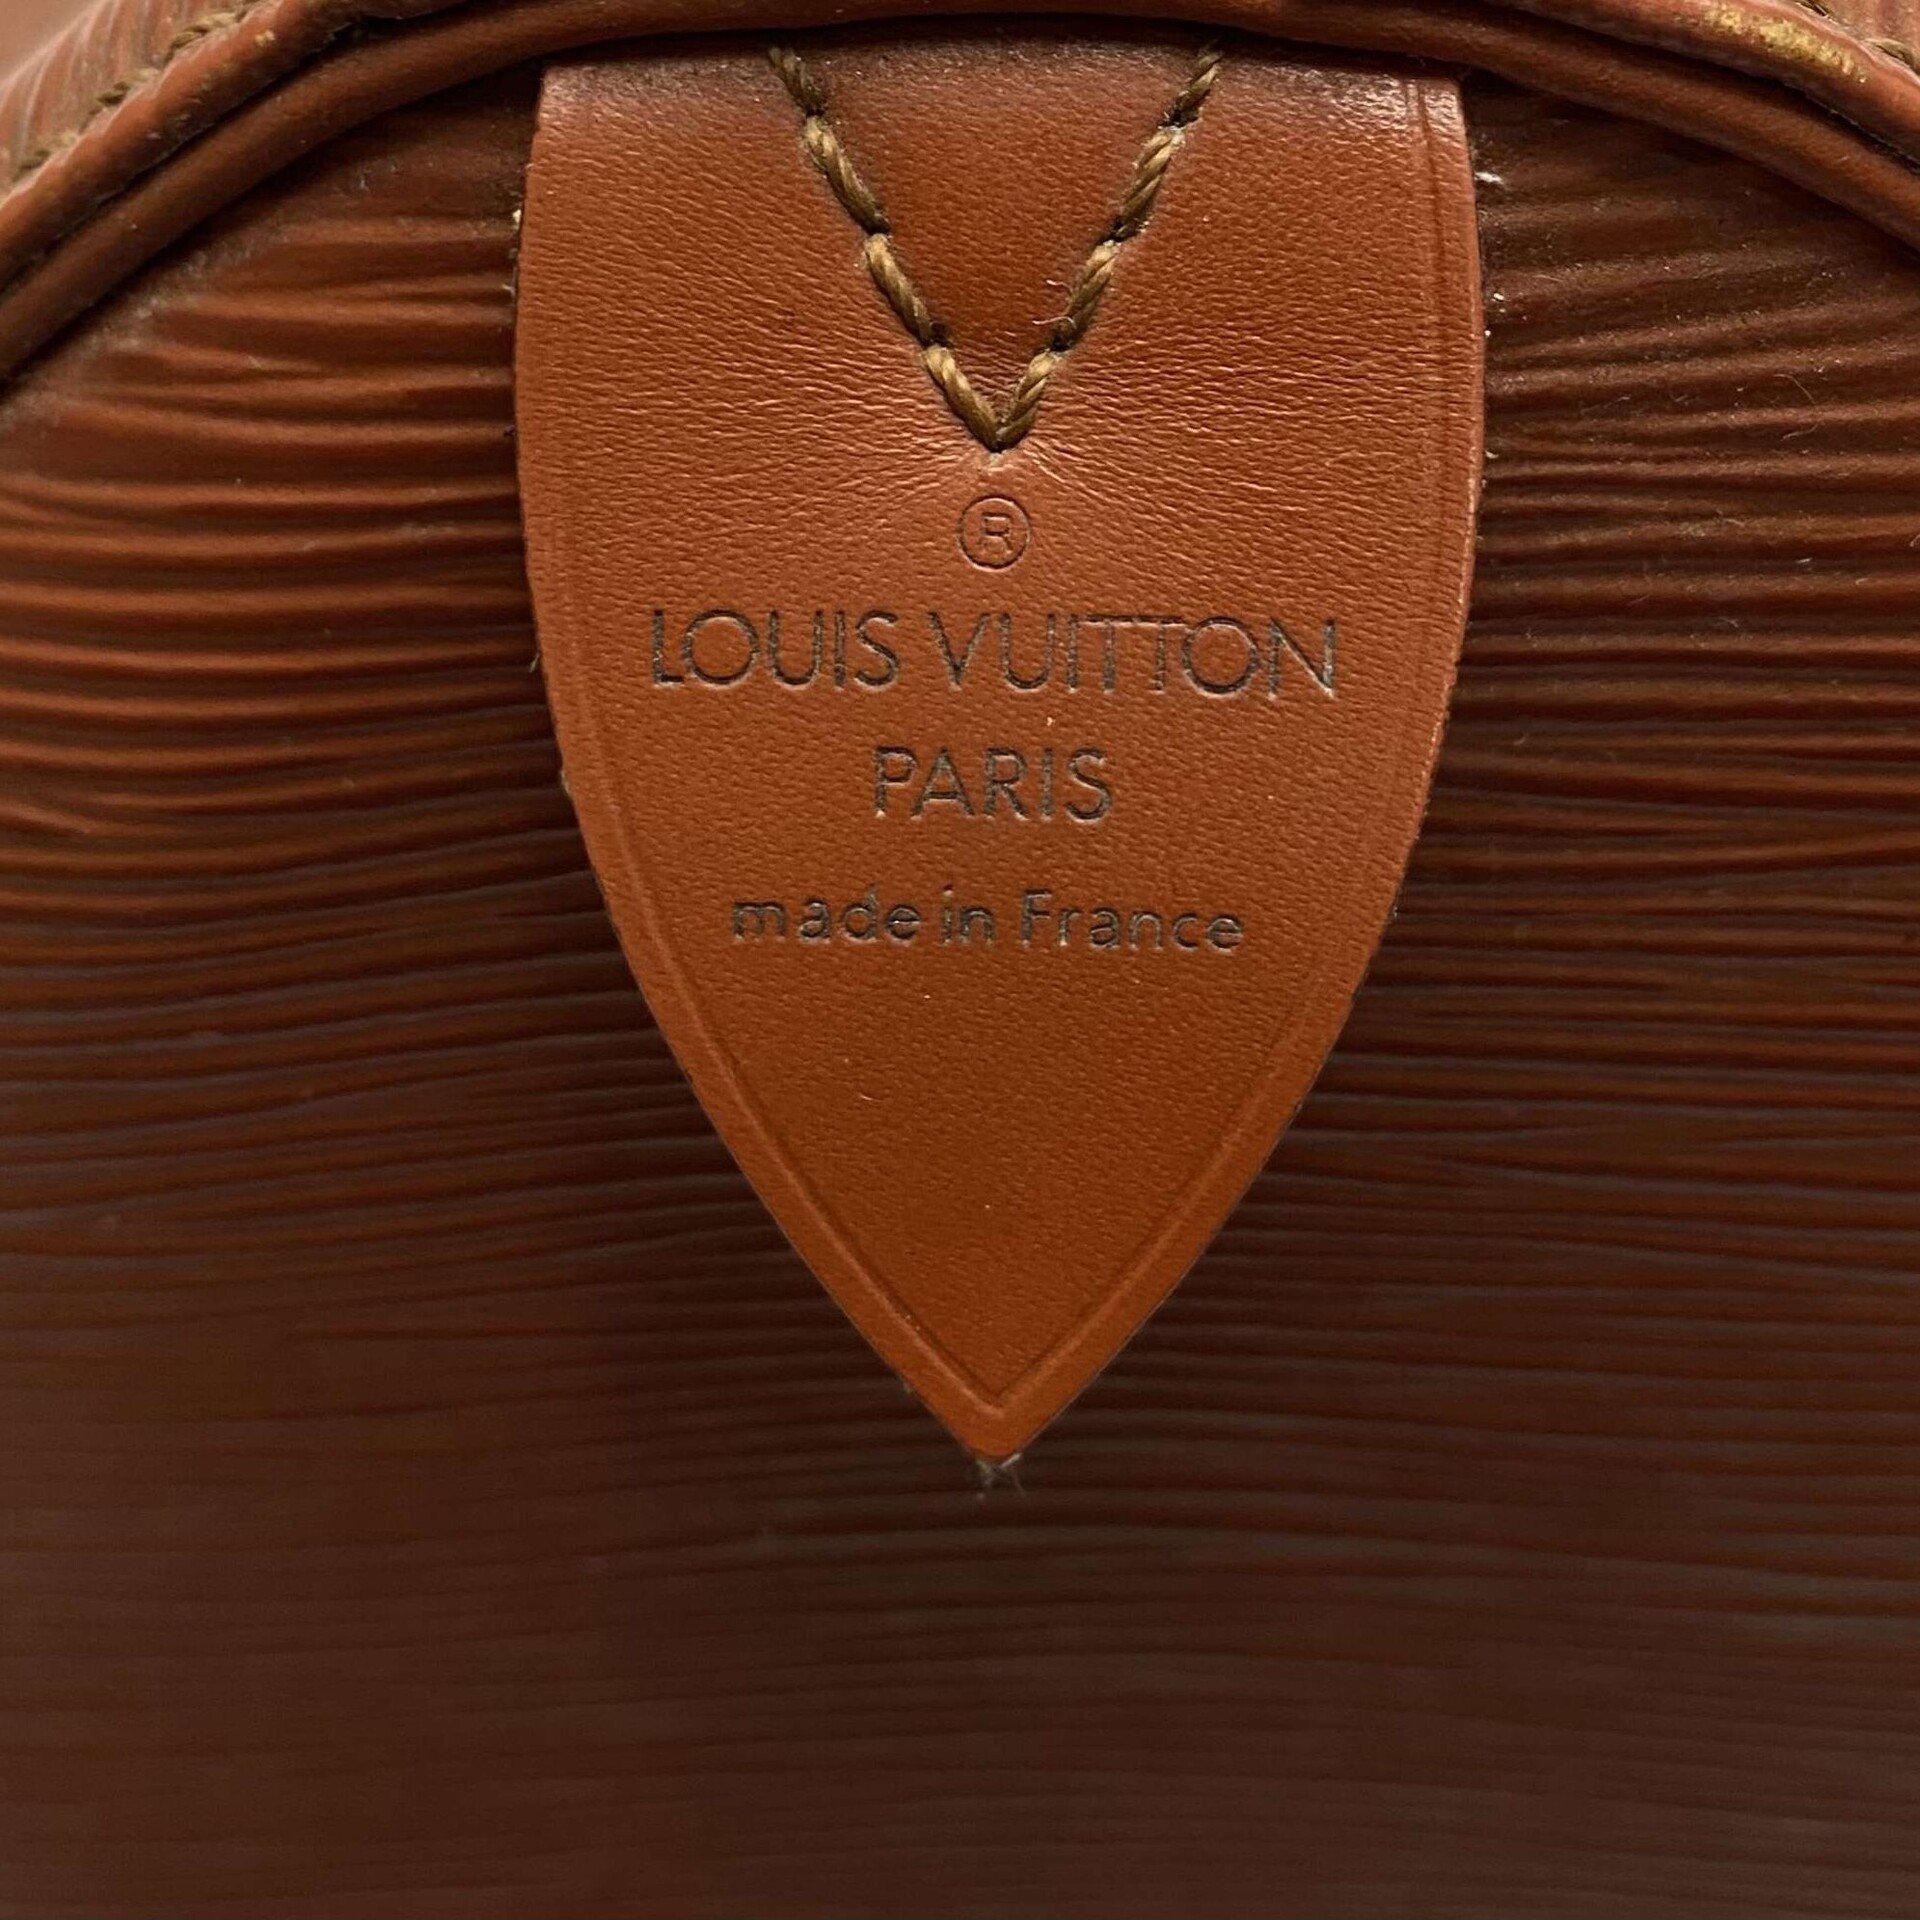 Bolsa Louis Vuitton Speedy Epi Caramelo